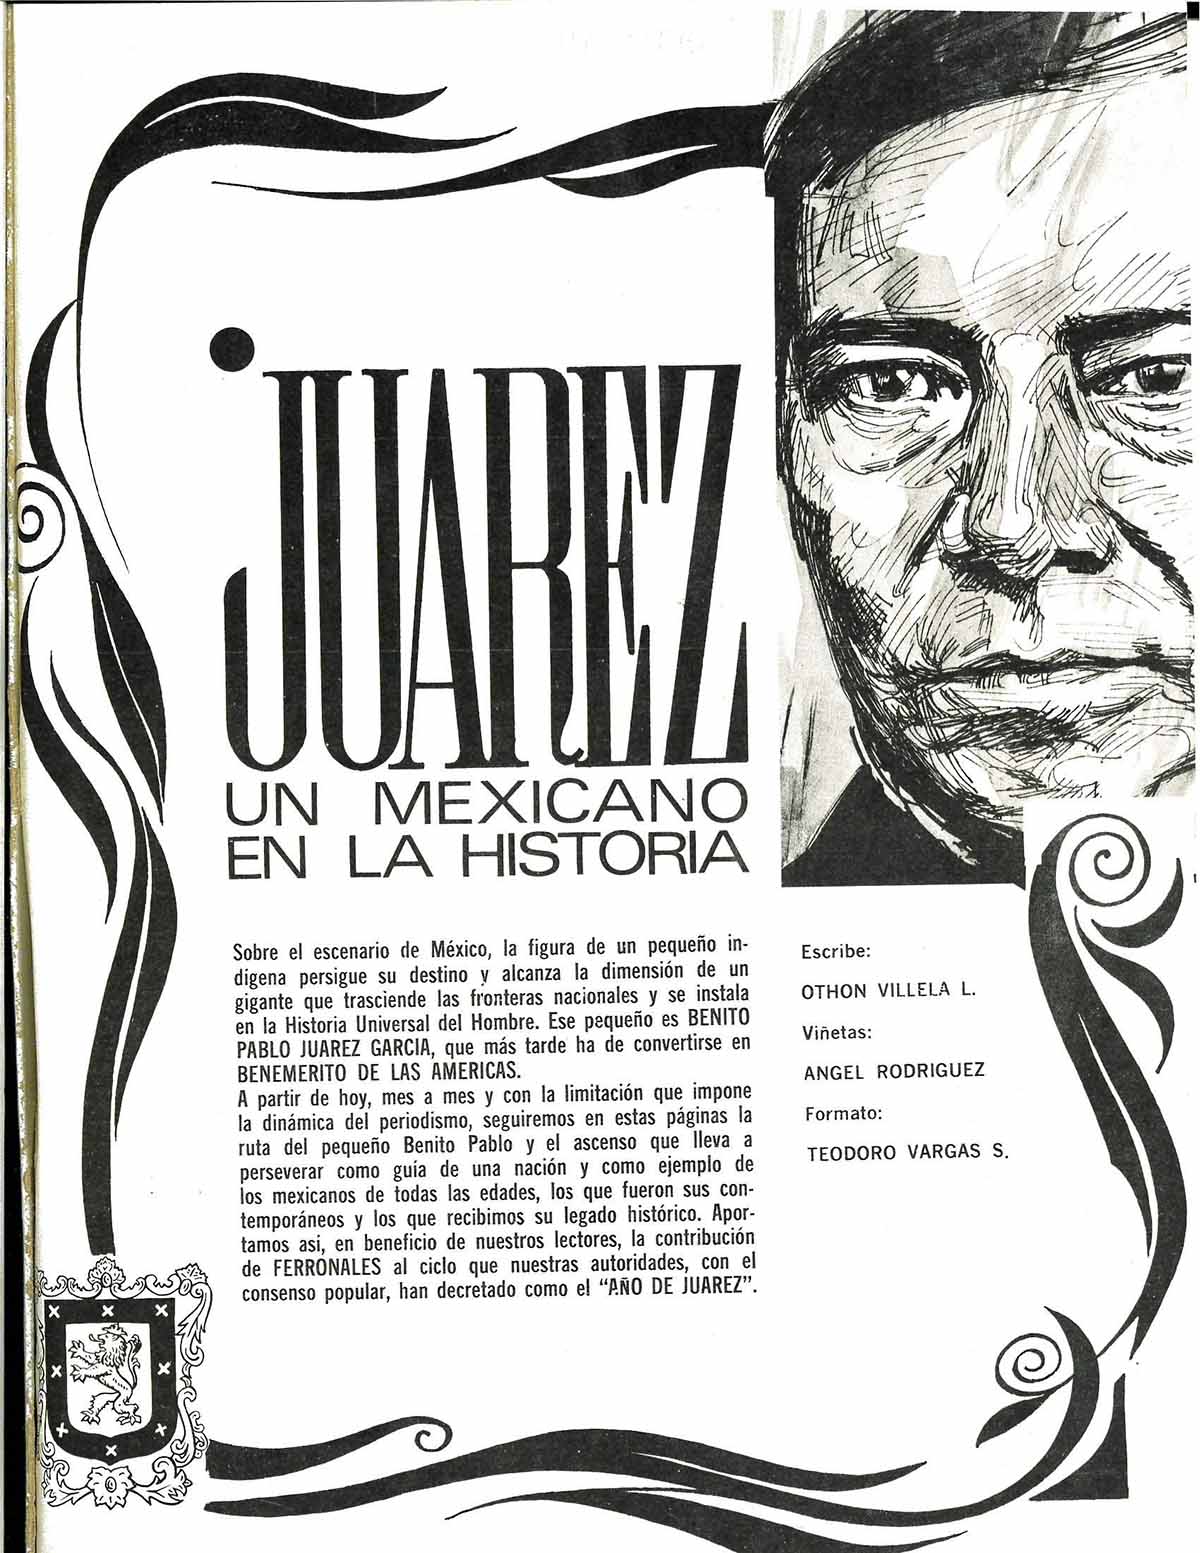 Descubre los acervos documentales que dan testimonio de la política ferroviaria de Benito Juárez